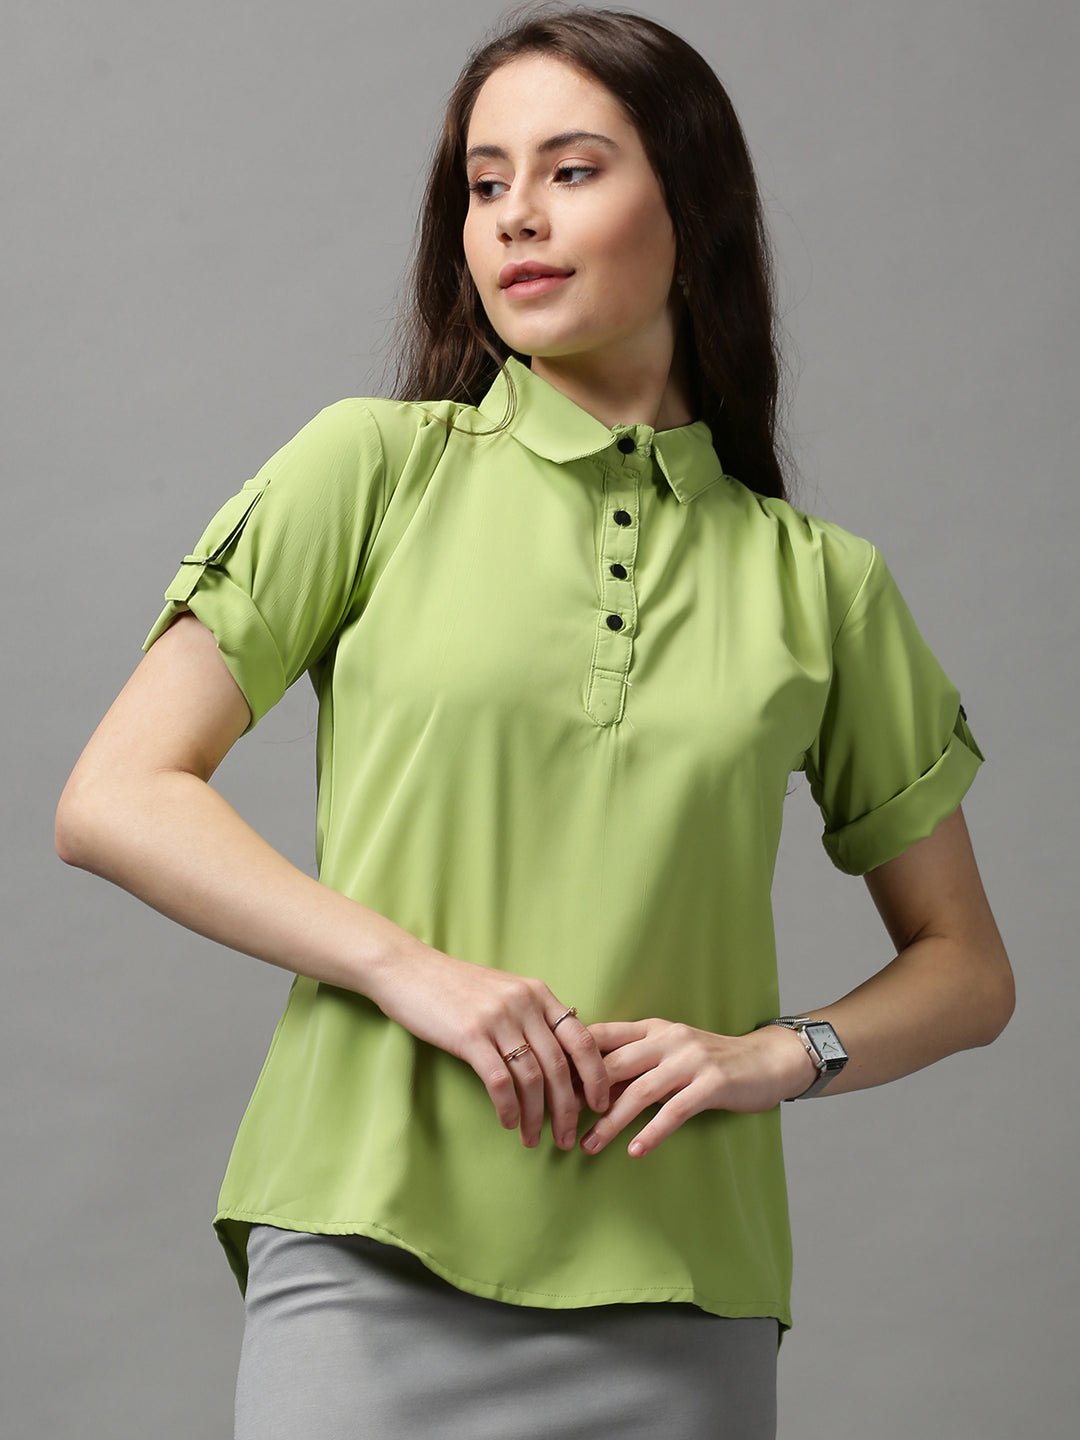 Women's Green Solid Top